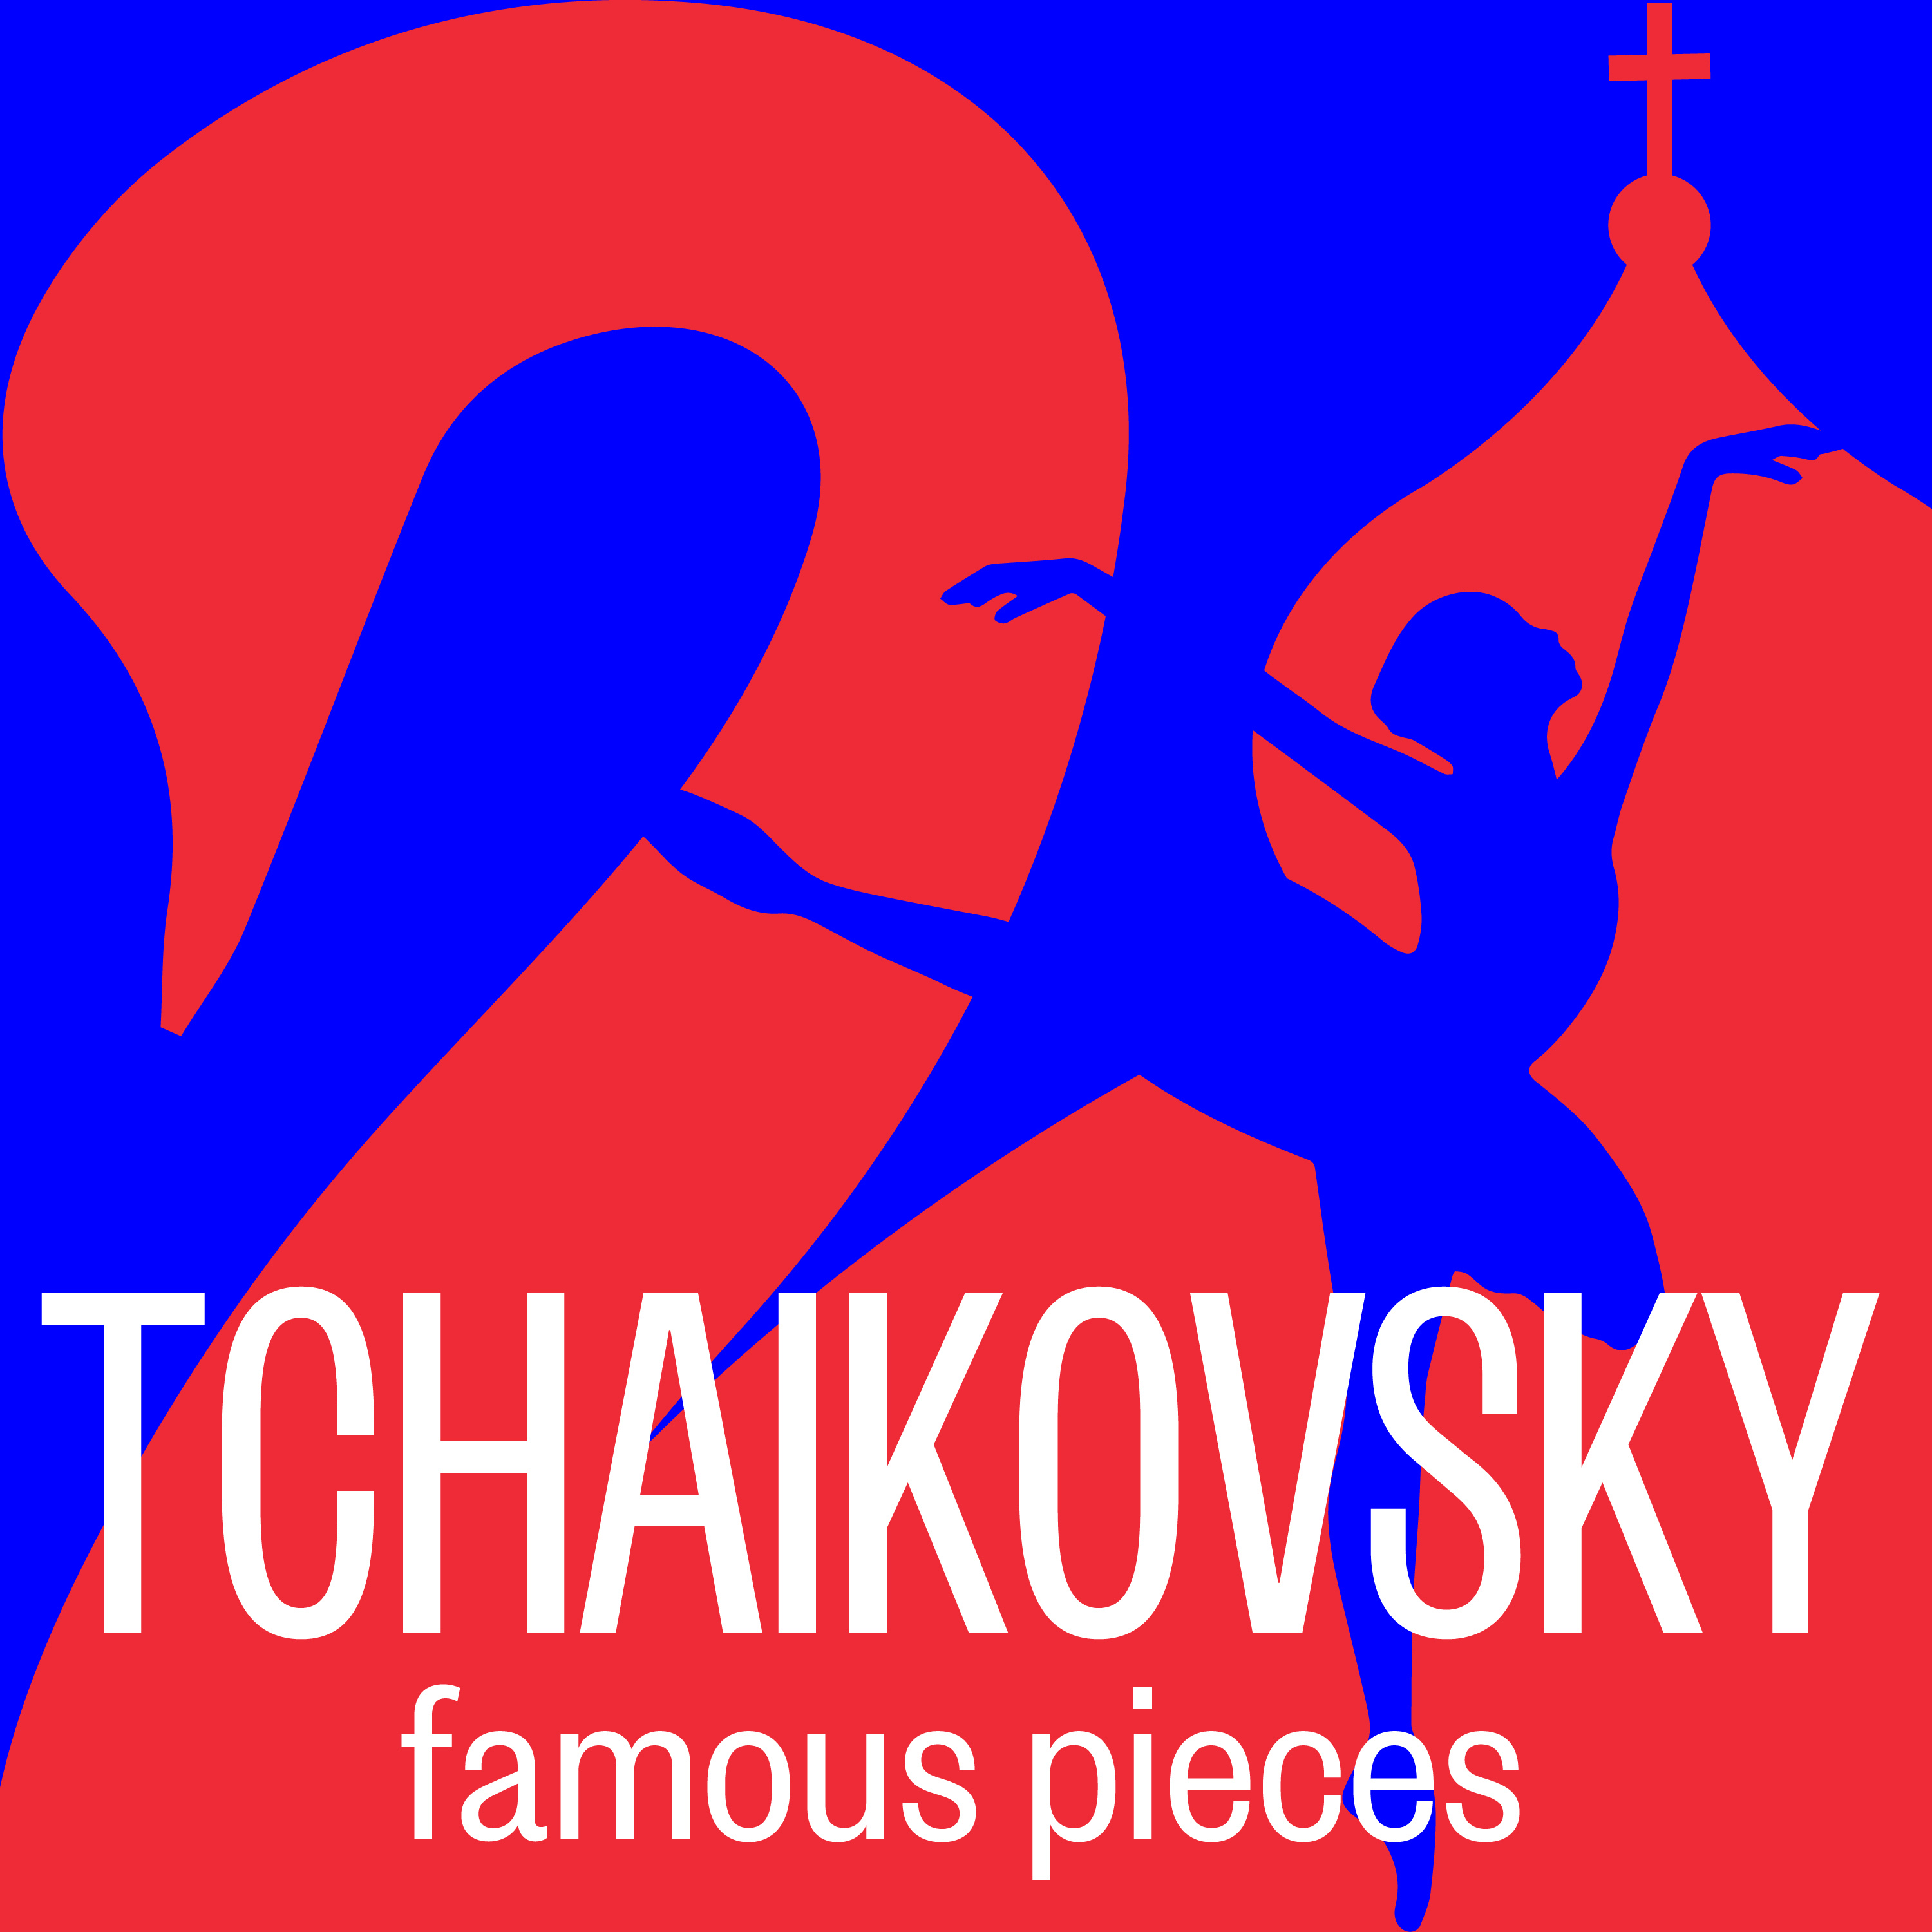 FAMOUS TCHAIKOVSKY PIECES